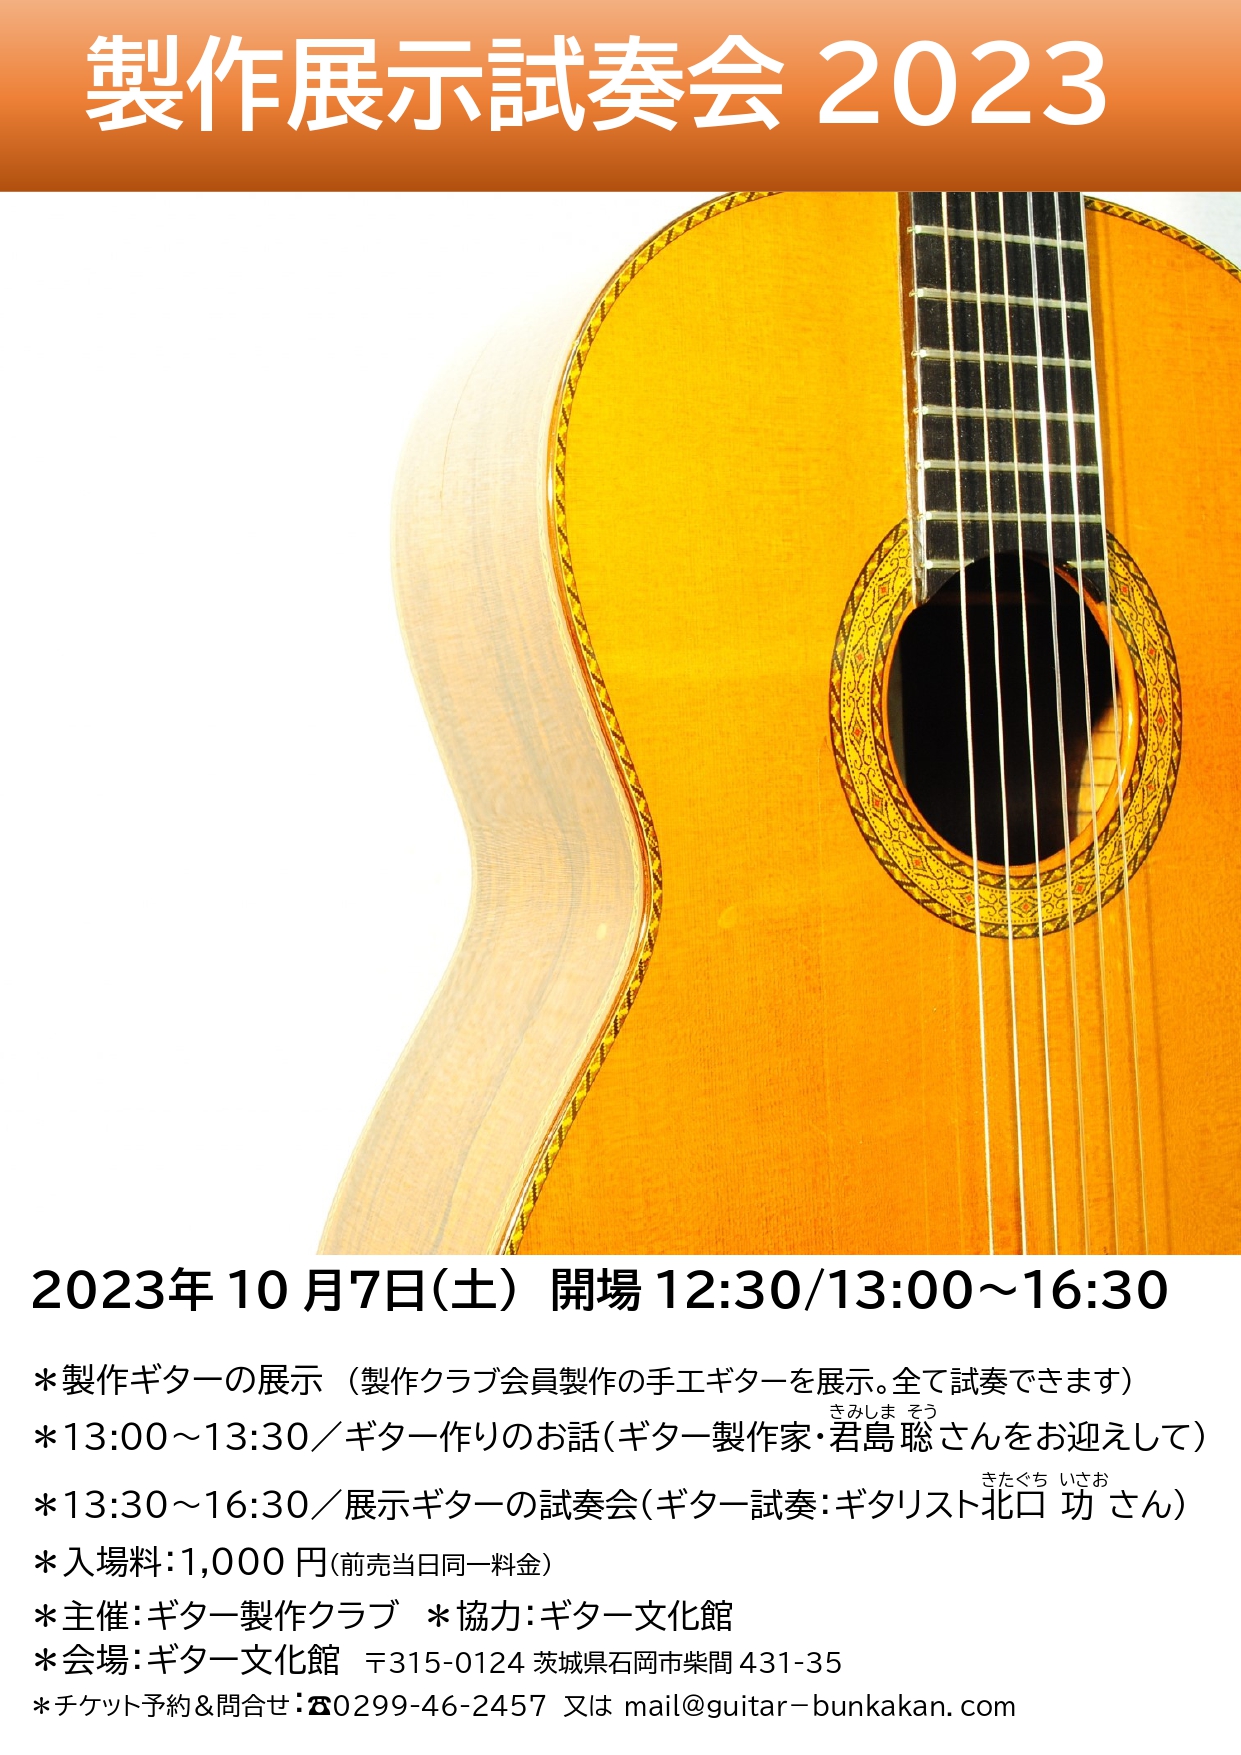 ギター製作展示会2023告知チラシ_page-0001